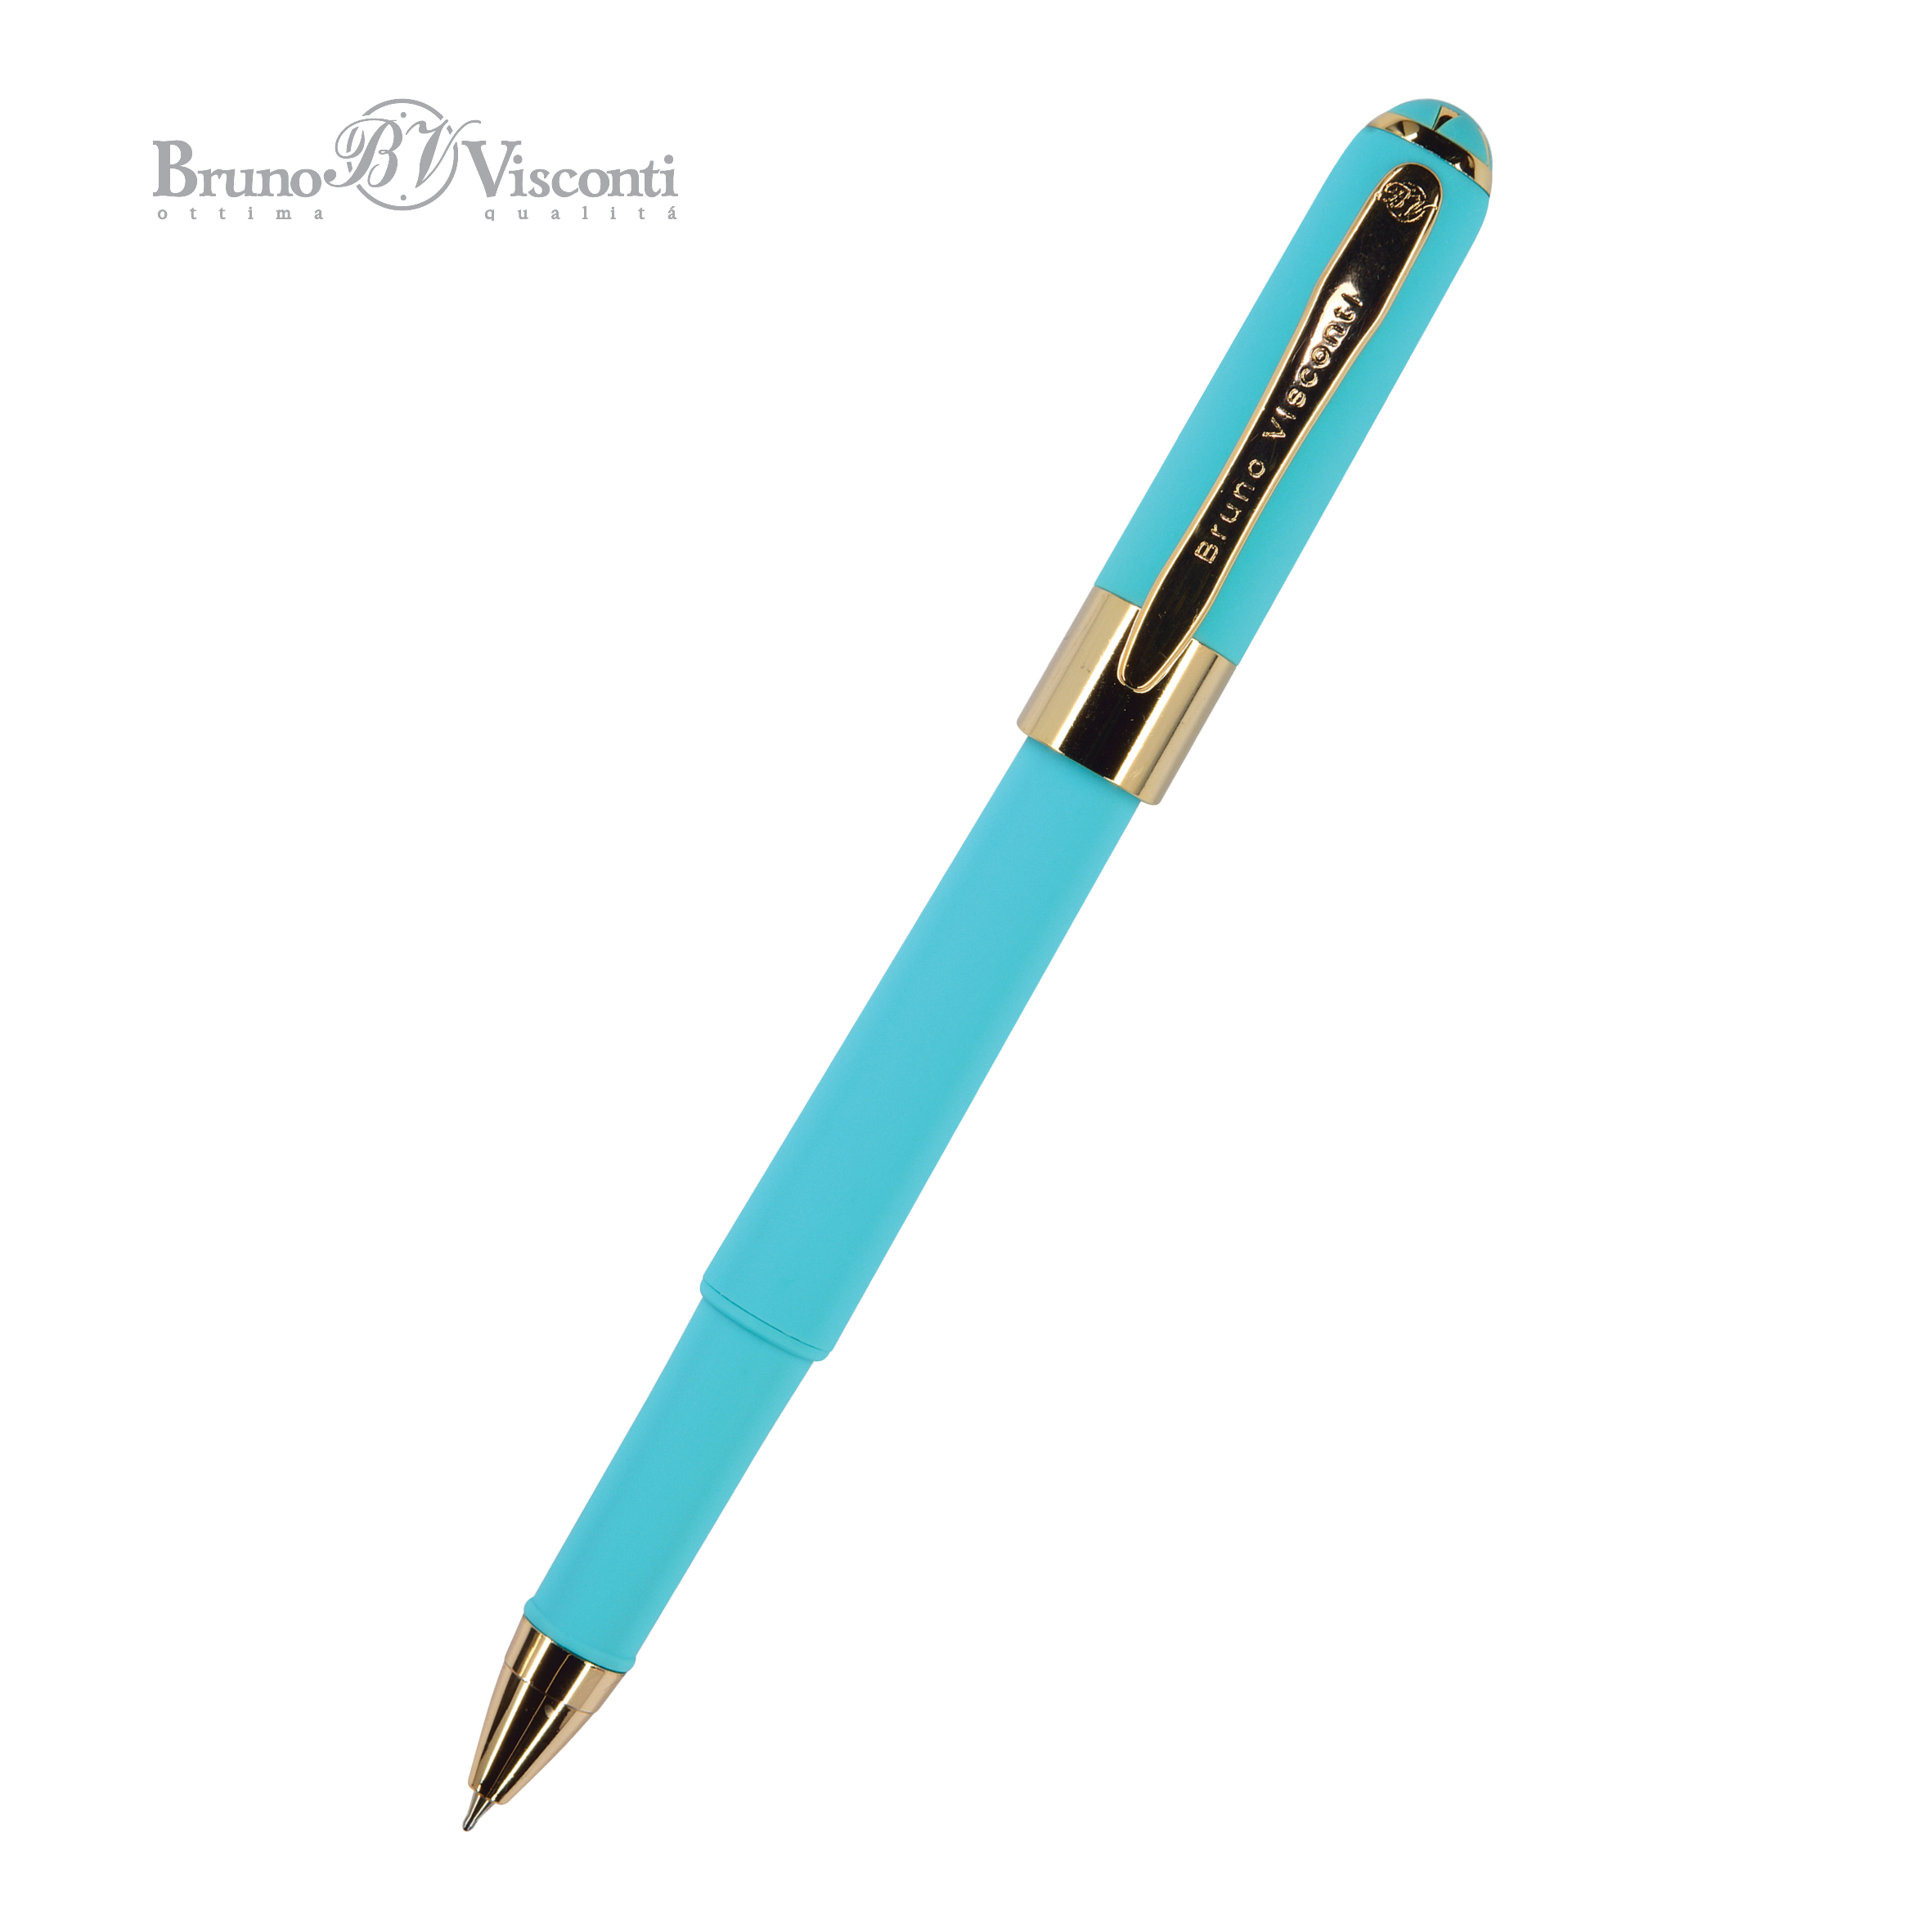 Ручка подар шар BV Monaco синяя 0,5мм голубой корпус